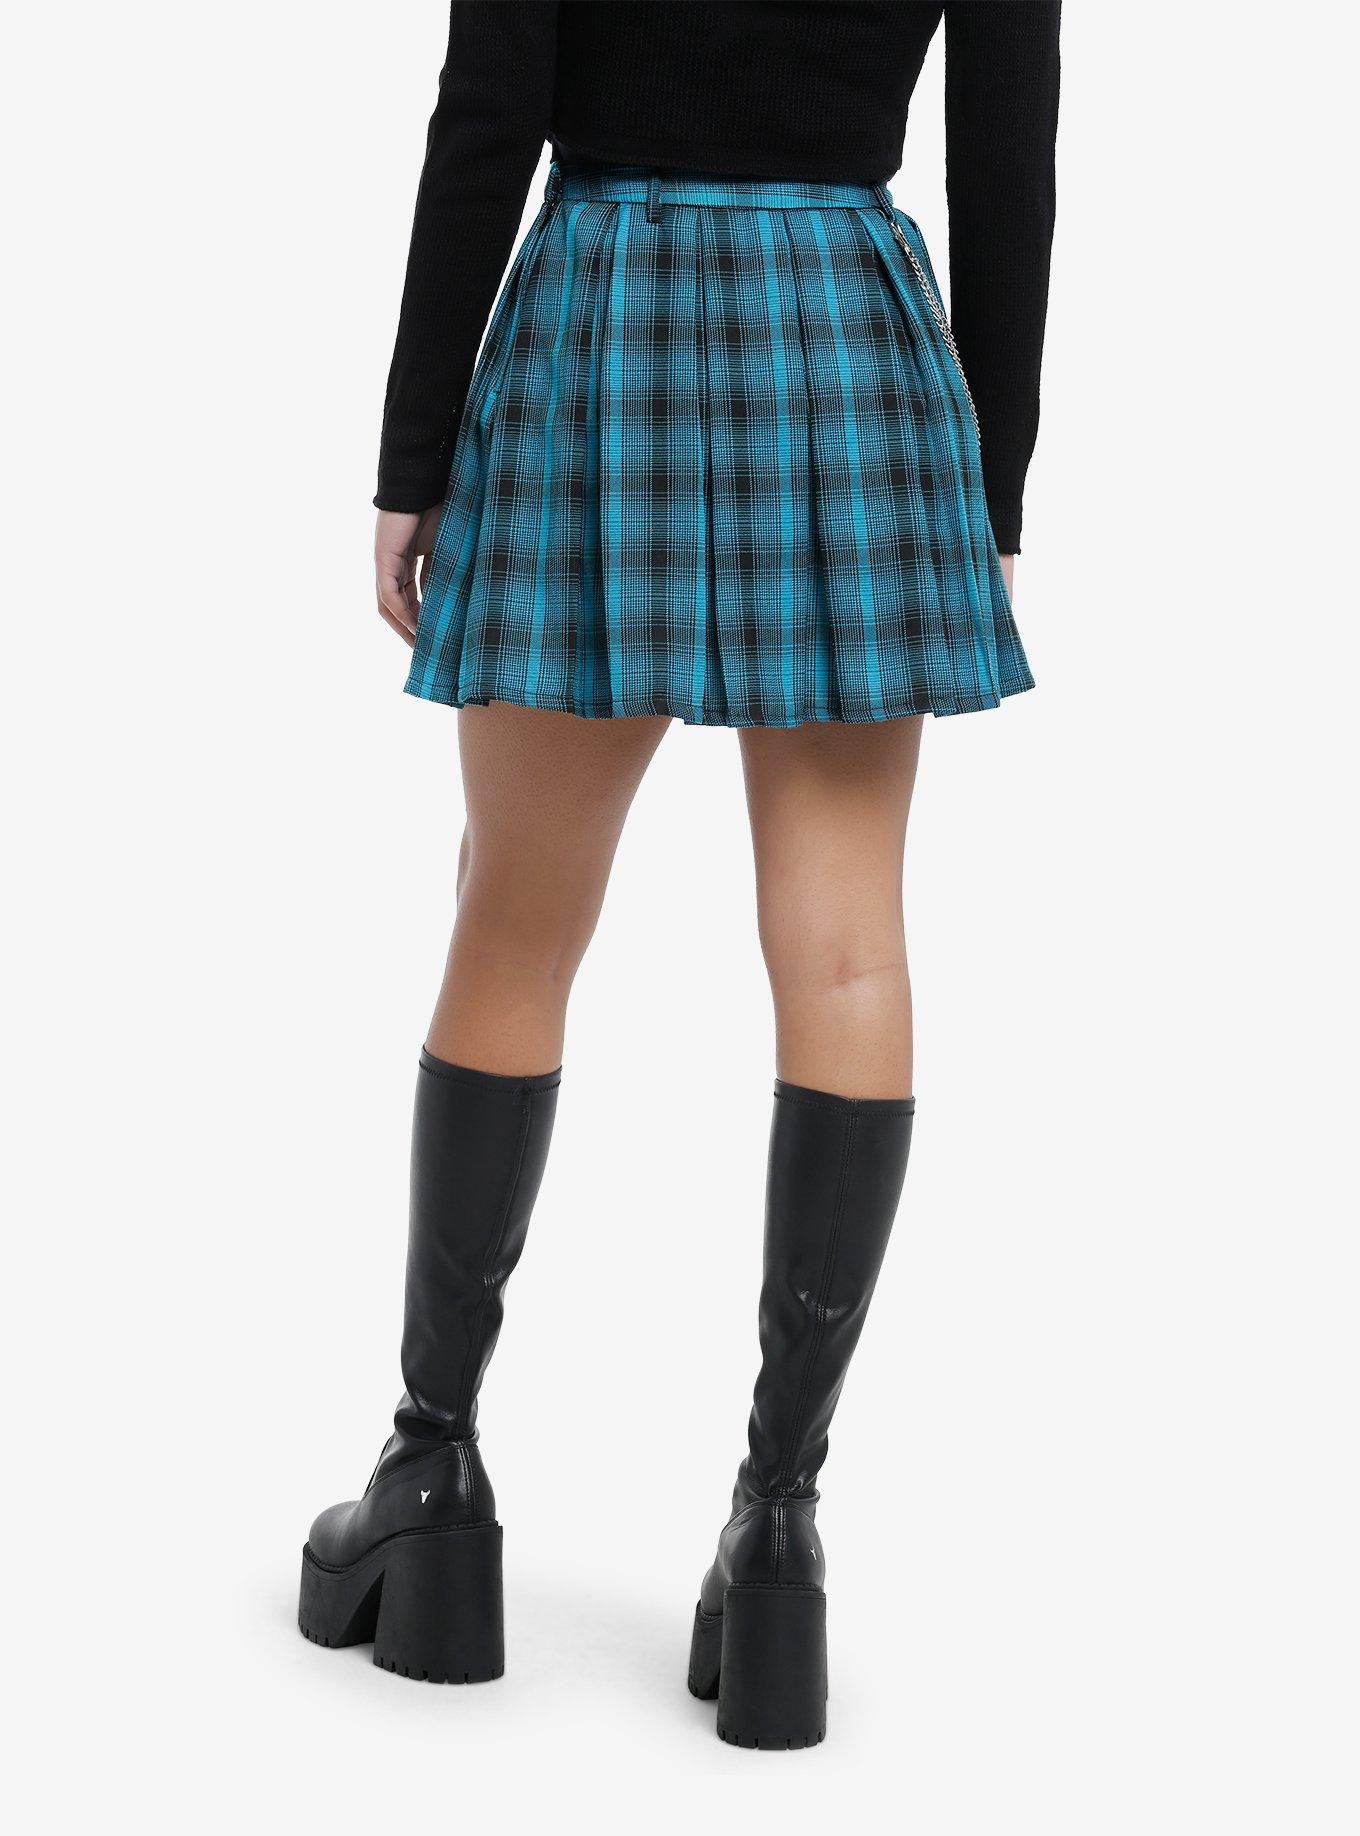 Teal & Black Plaid Pleated Skirt